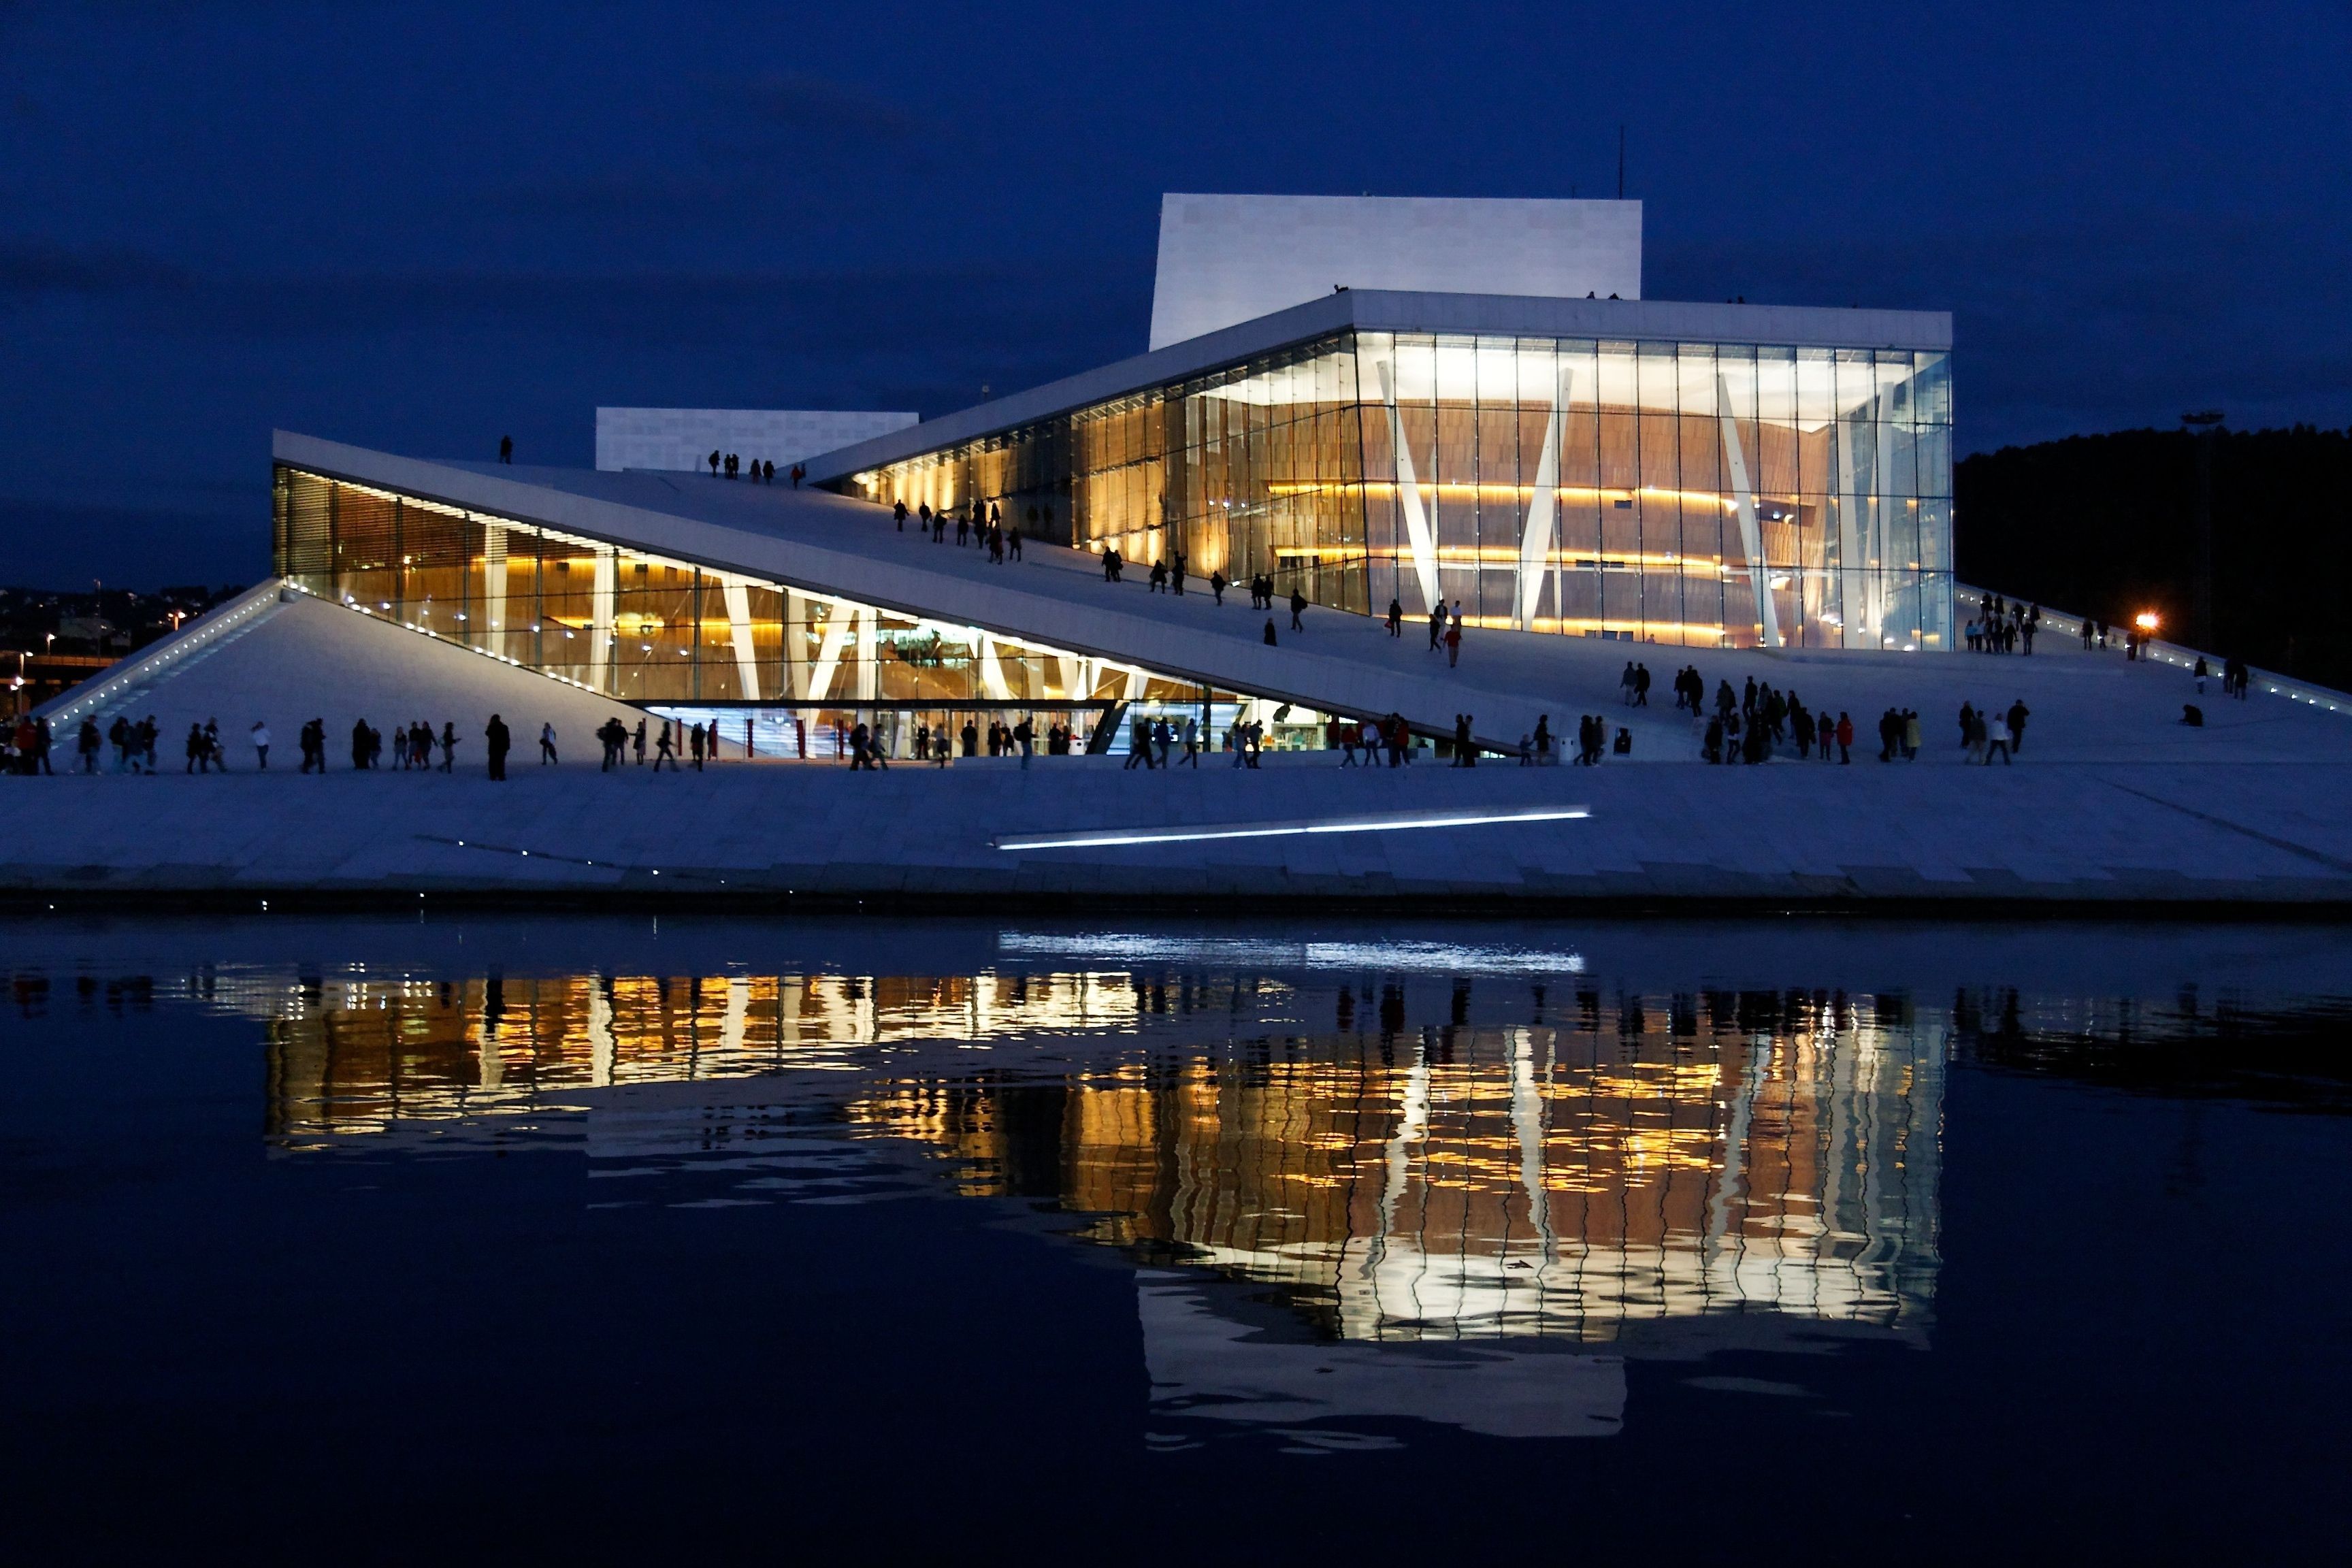 Snohetta's Design for the Oslo Opera House